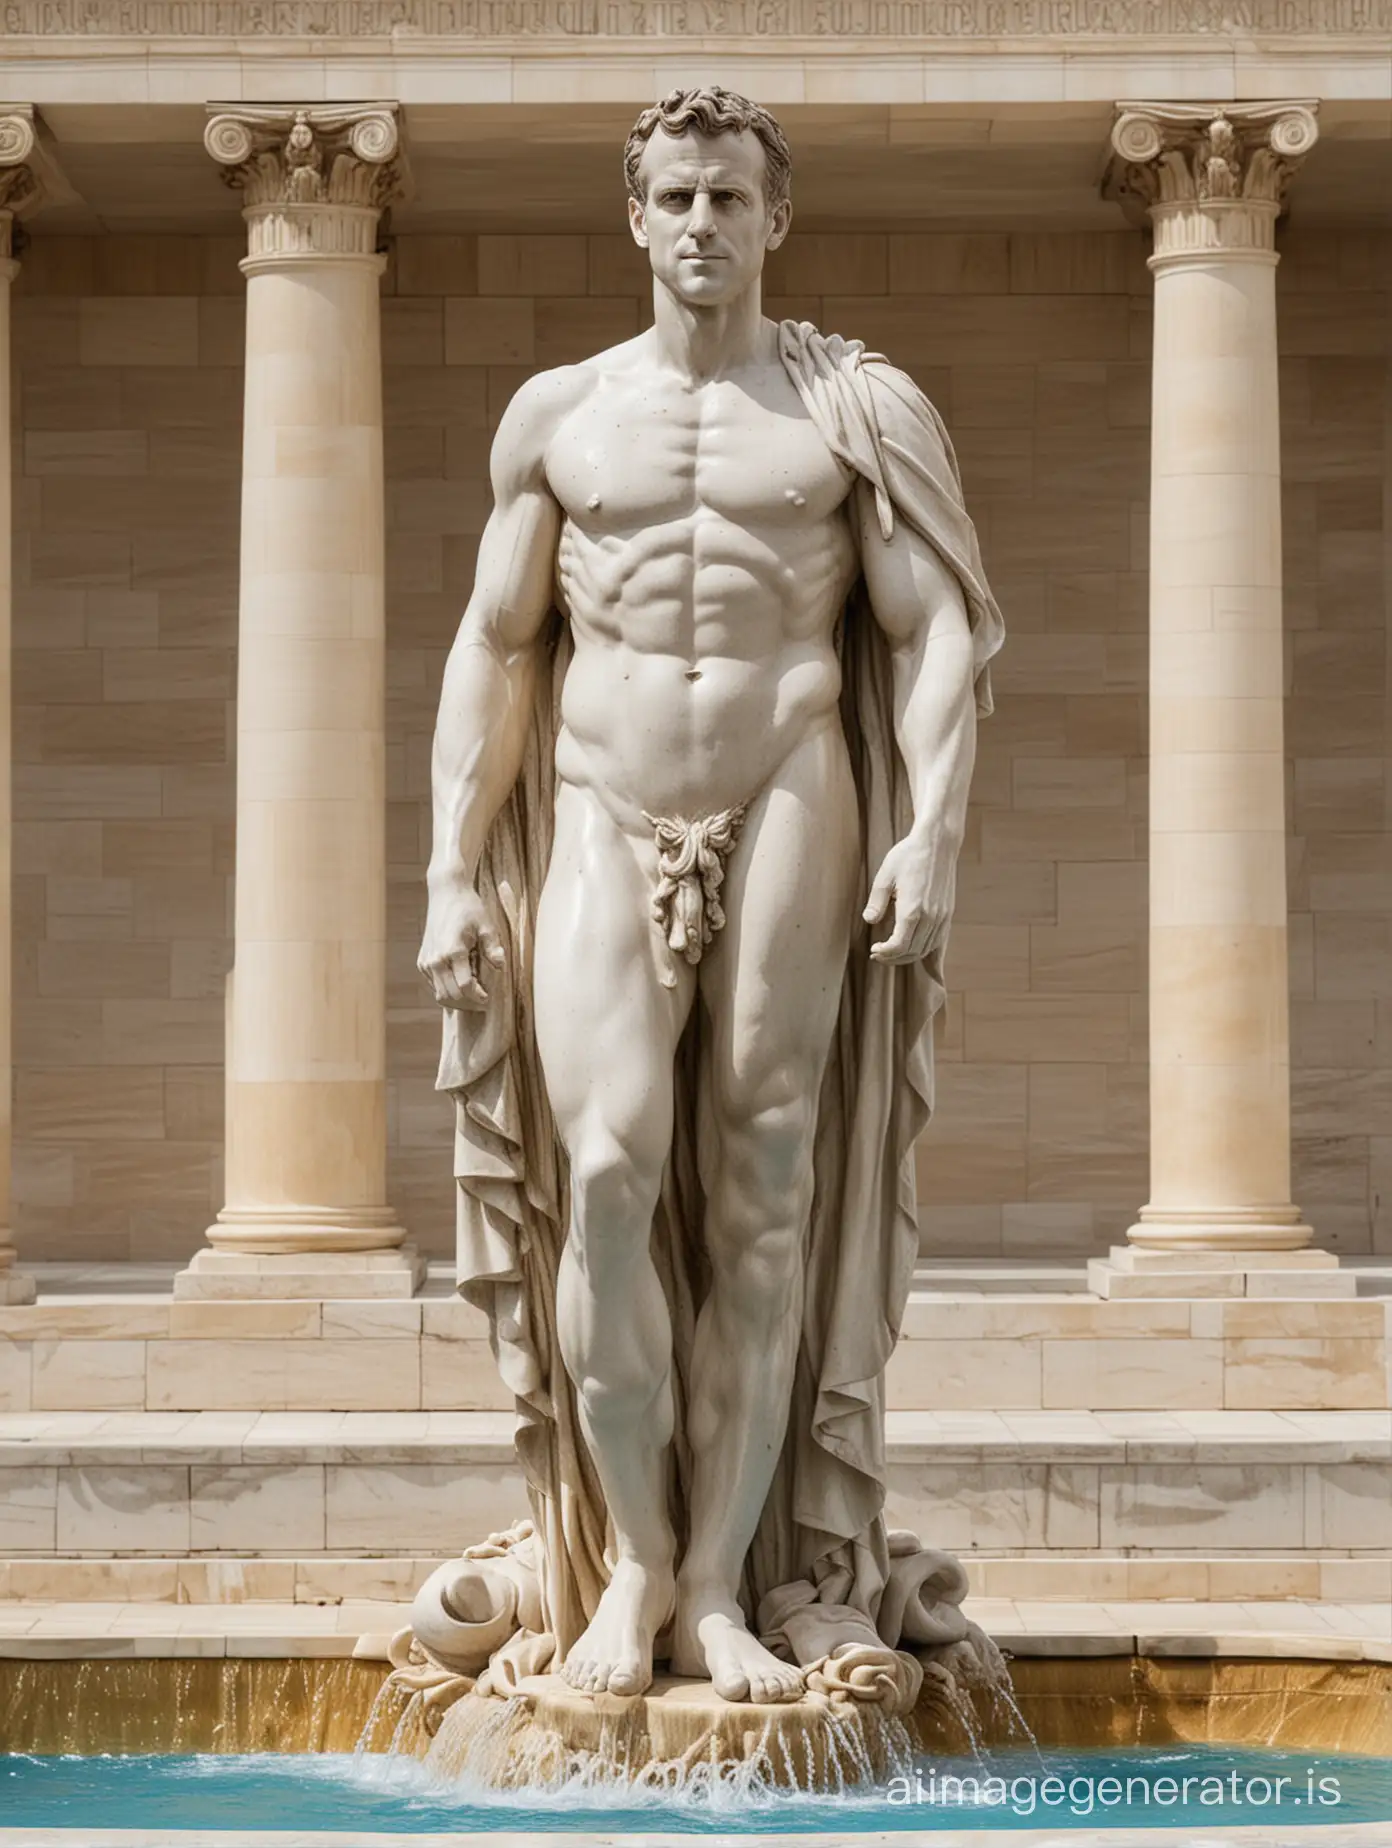 Emmanuel-Macron-Statue-in-Greek-Fountain-Setting